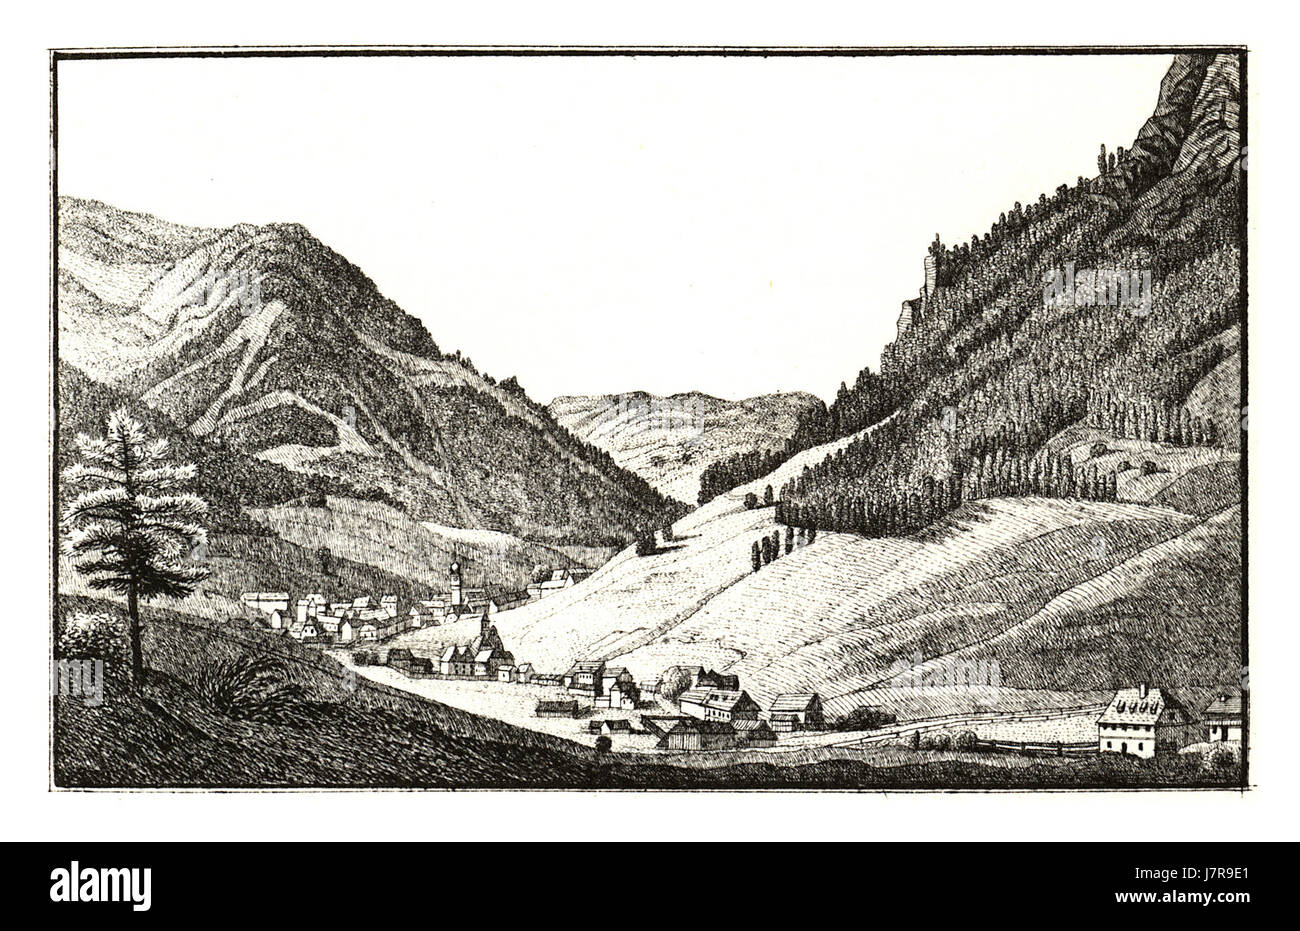 319 Vordernberg  J.F.Kaiser Lithografirte Ansichten der Steiermark 1830 Stock Photo